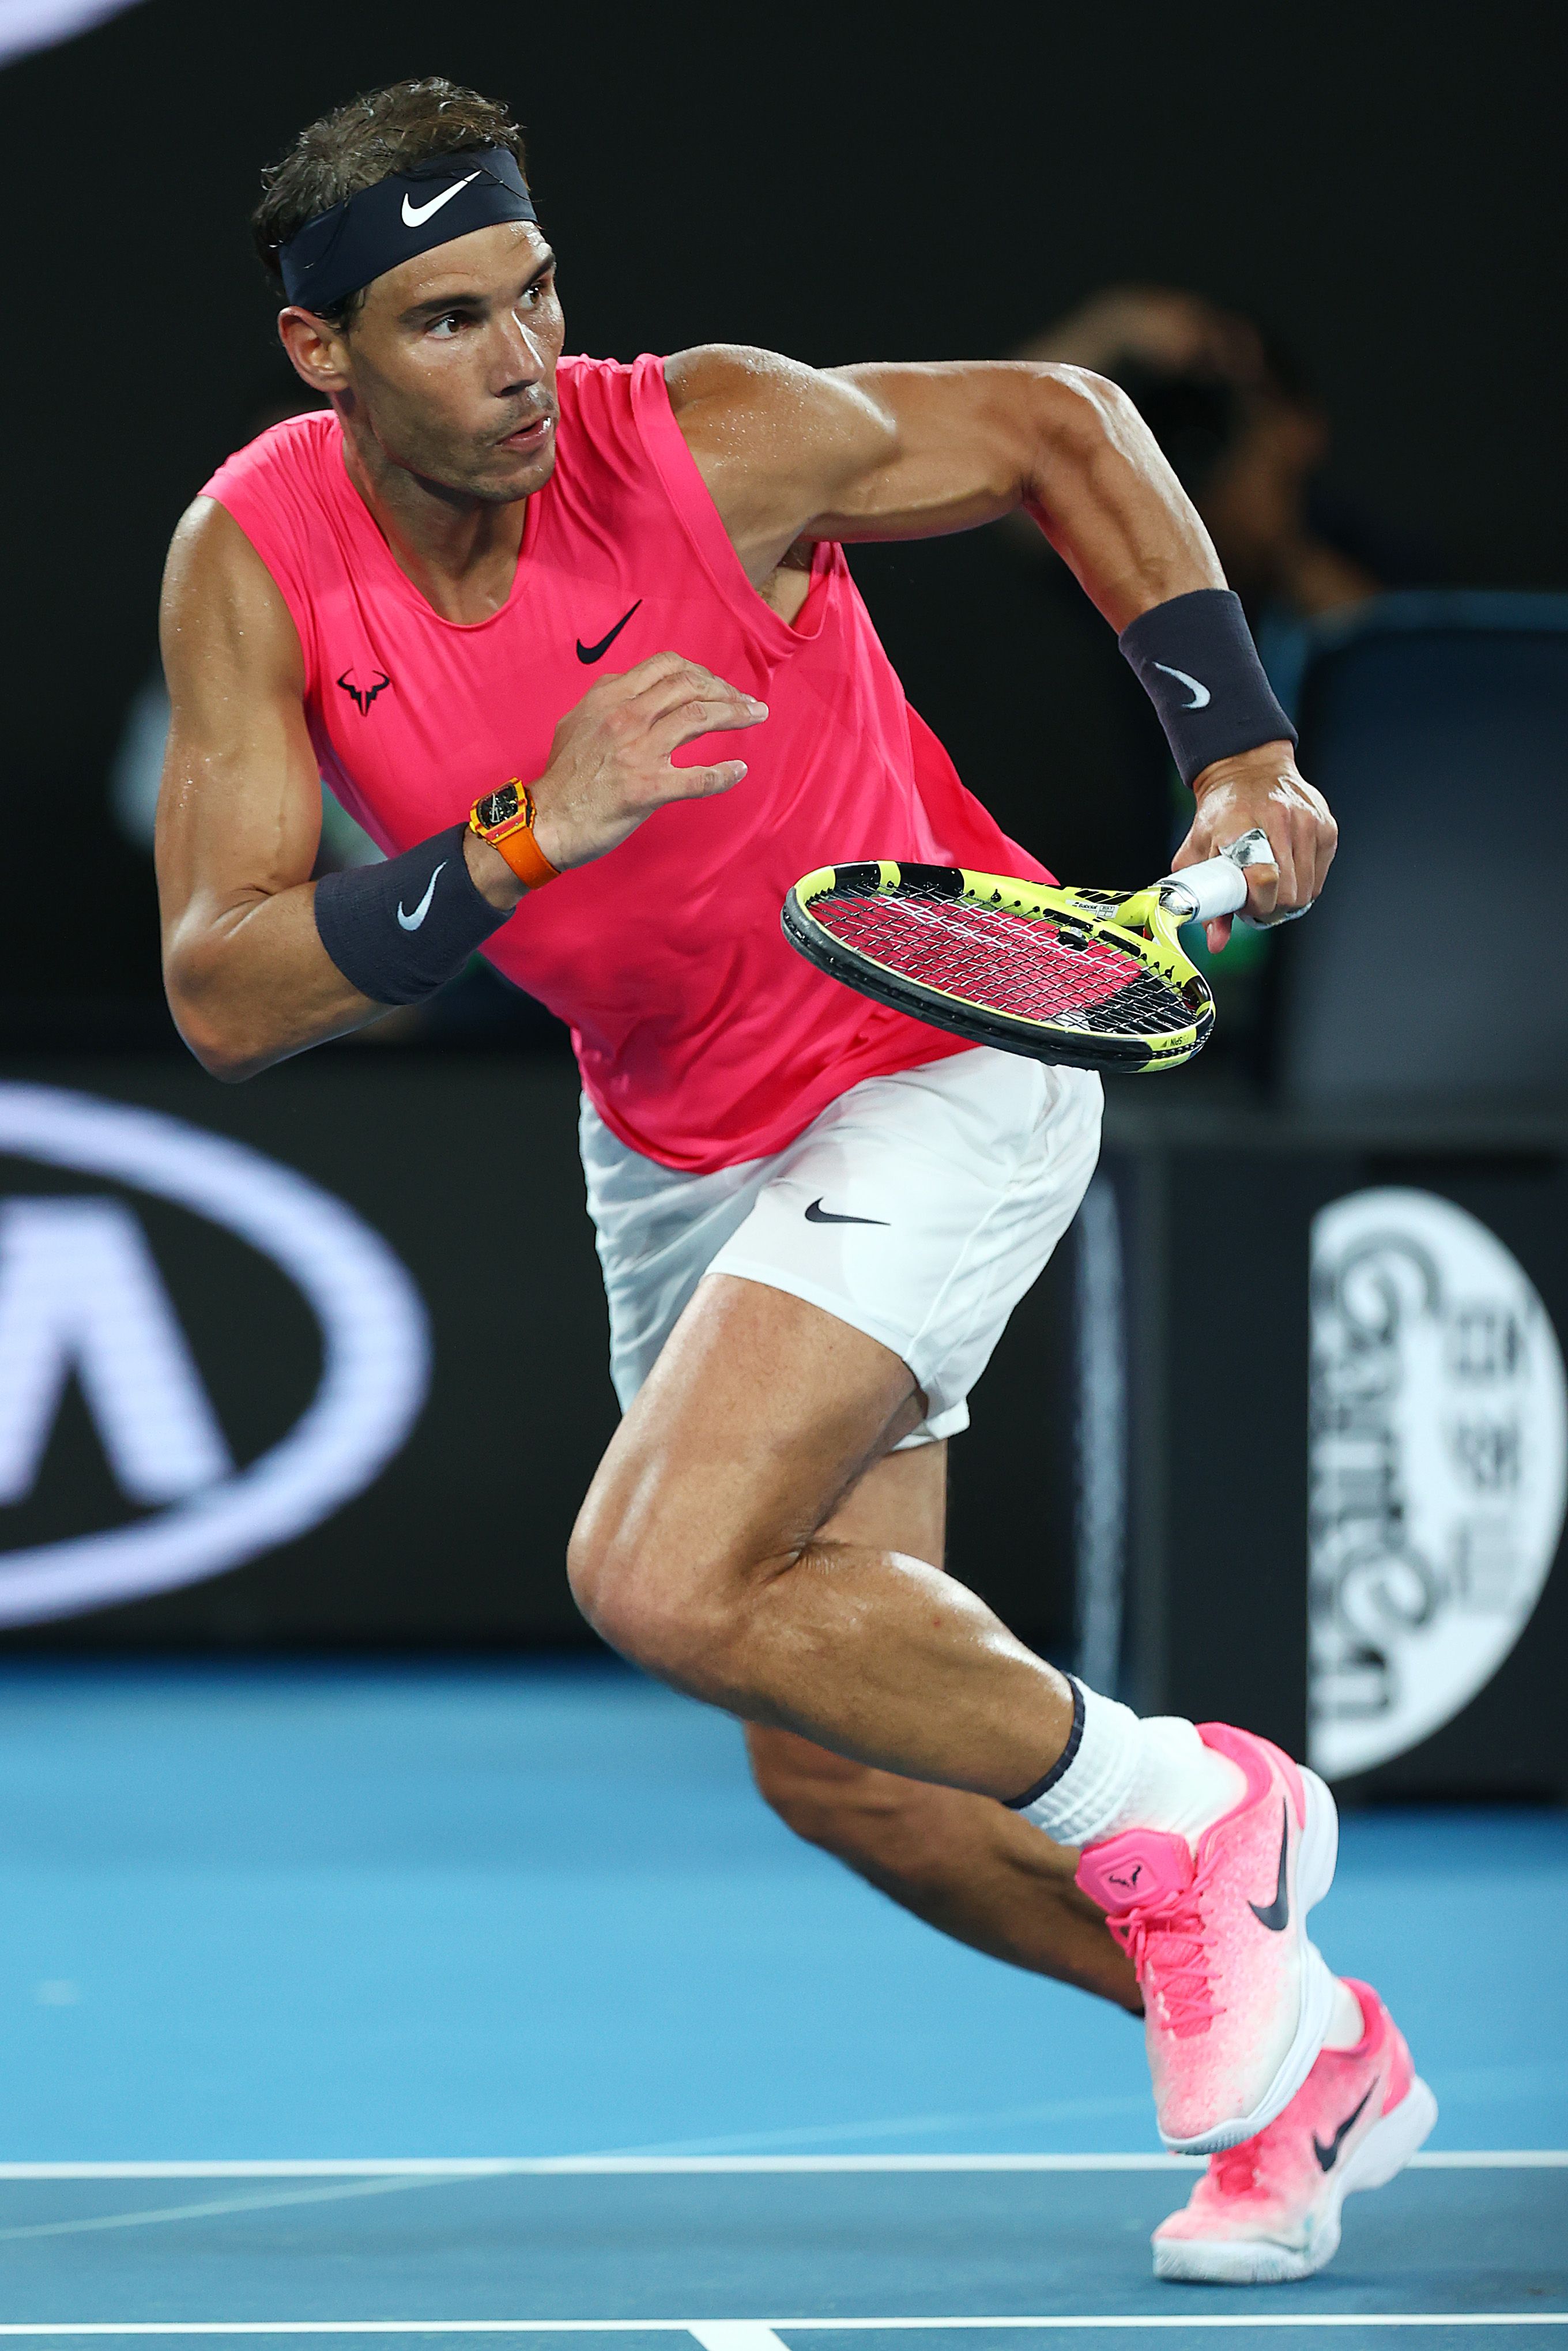 La canotta 'sgargiante' di Rafael Nadal, Nike continua a voler stupire